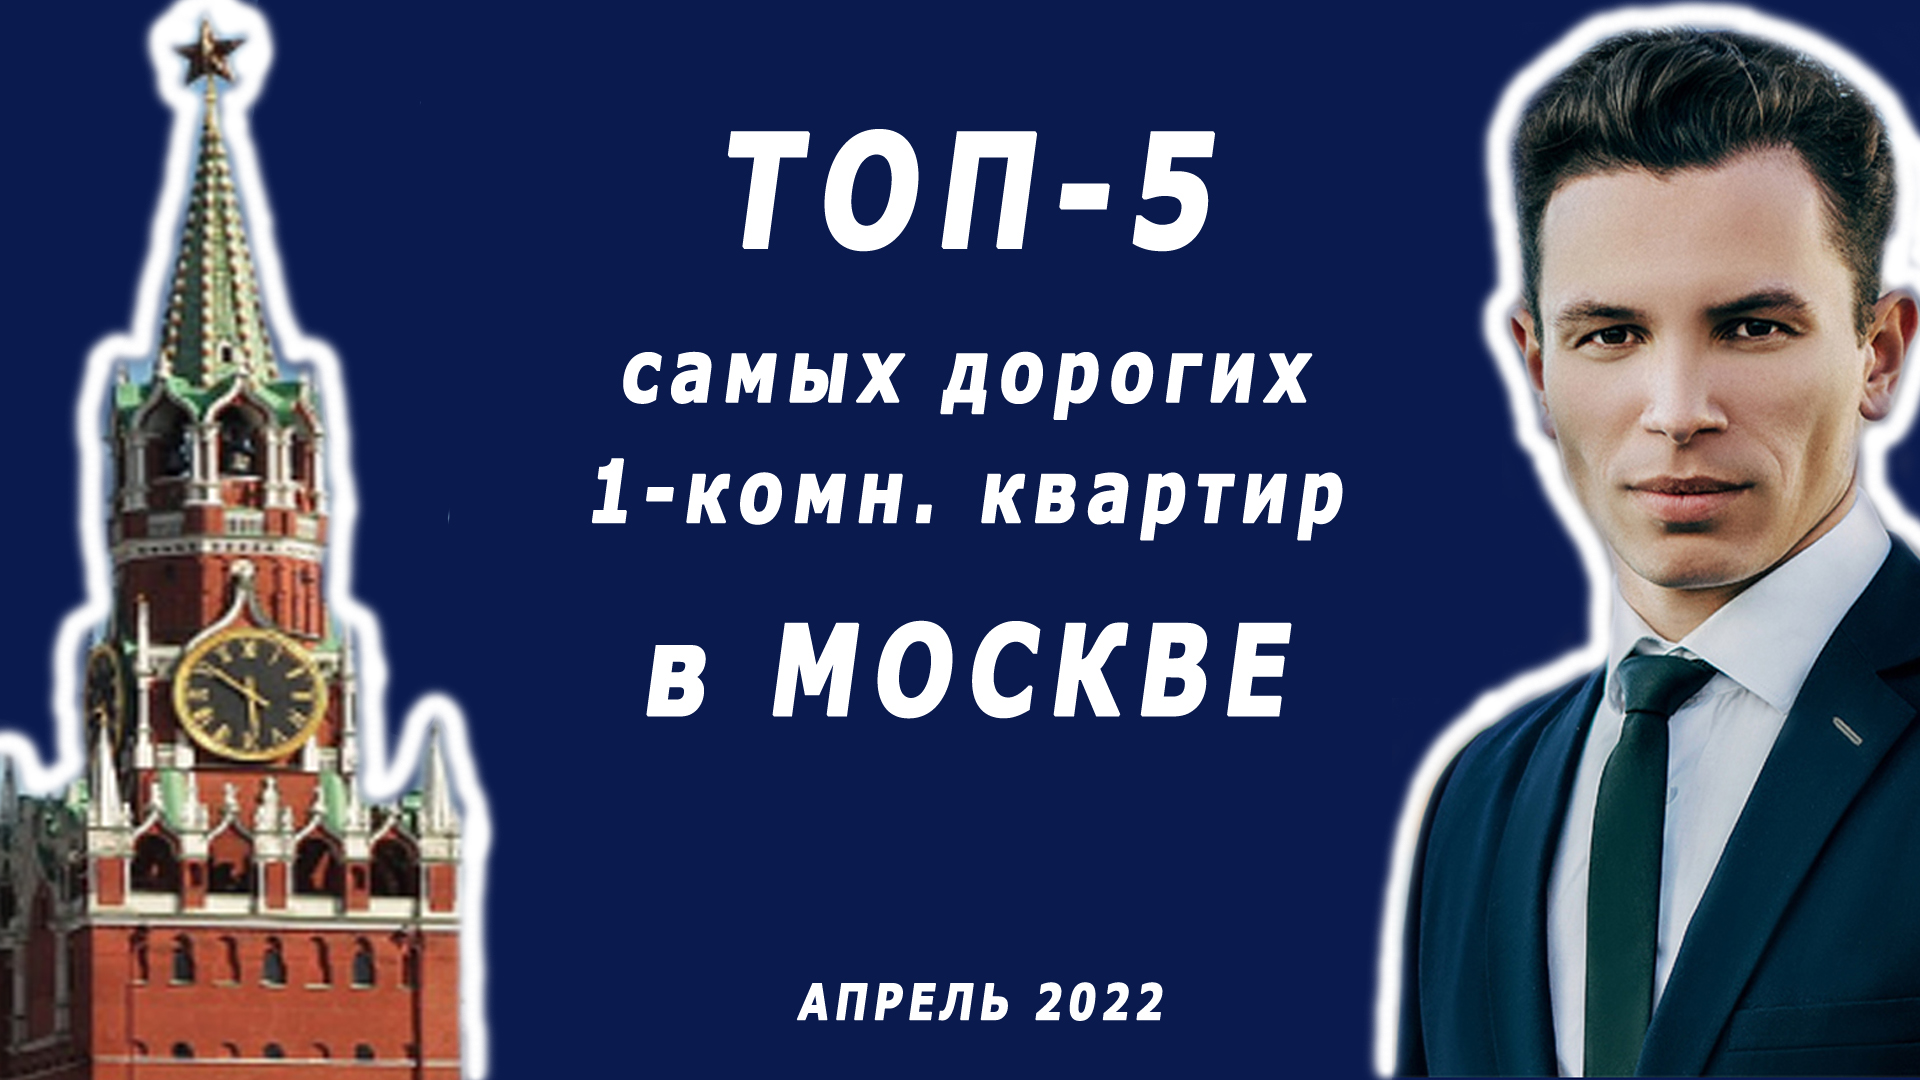 ТОП-5 самых дорогих однокомнатных квартир в Москве за апрель 2022